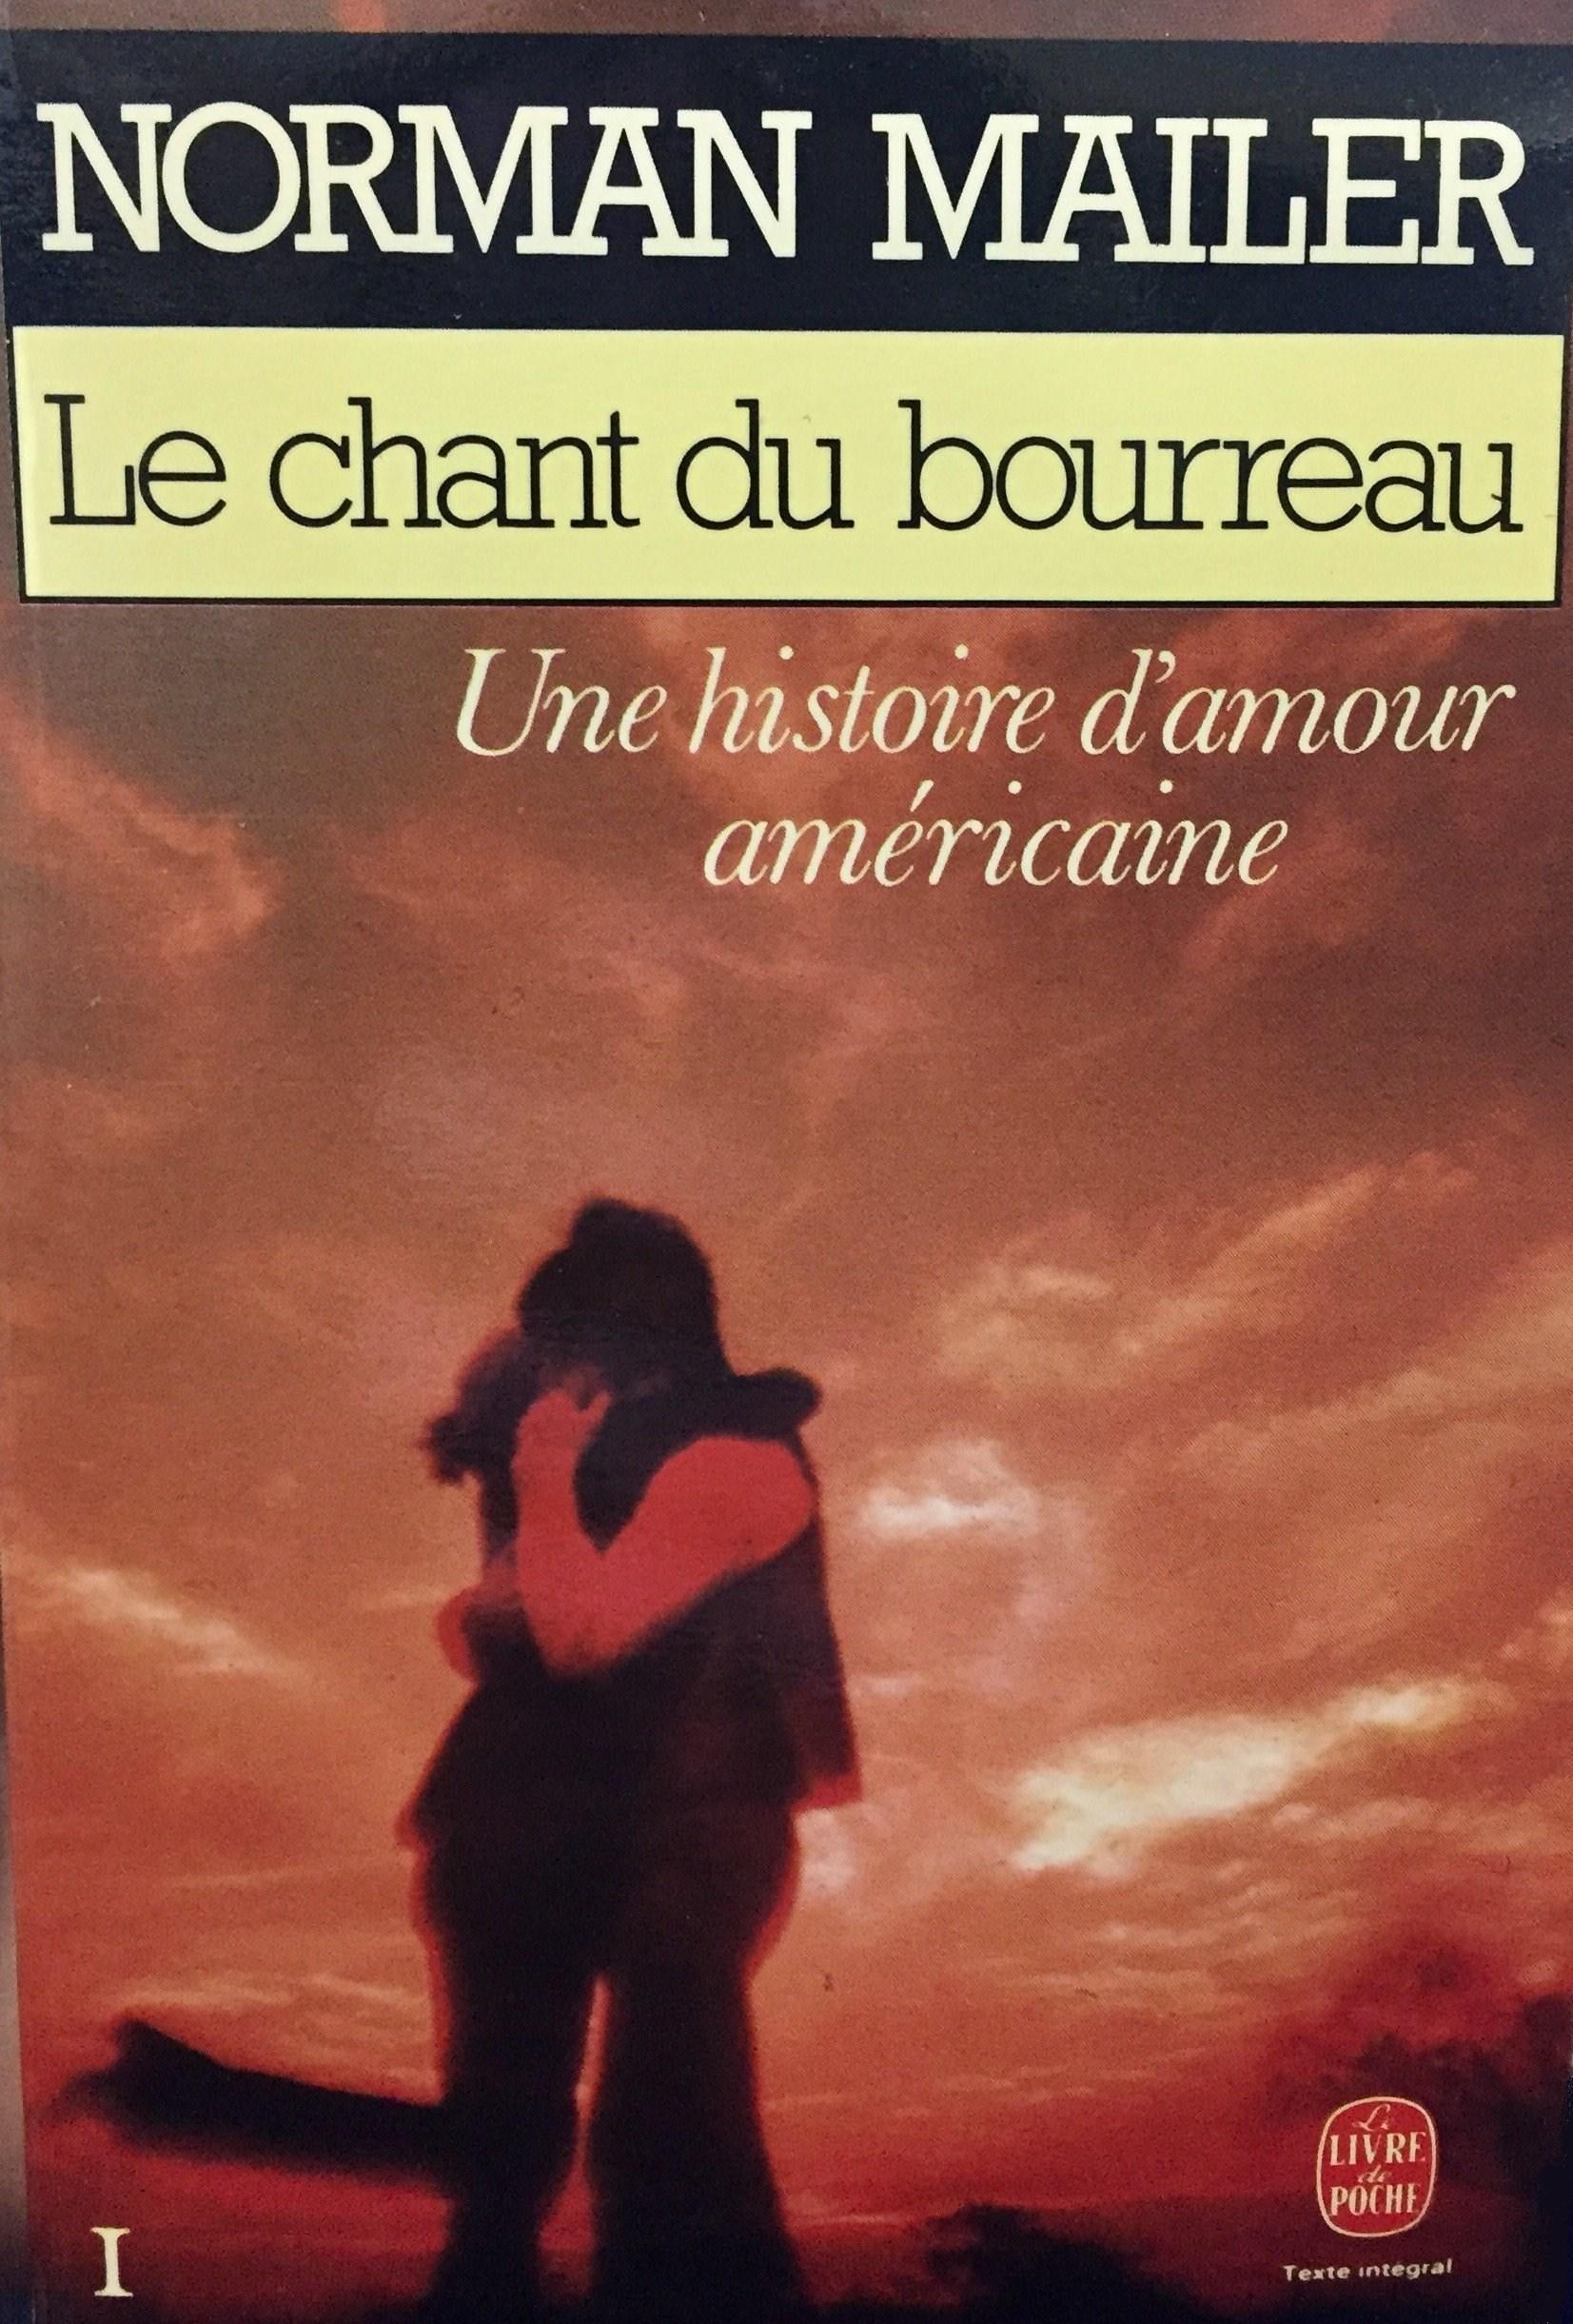 Livre ISBN 2253029653 Le chant du bourreau # 1 : Le chant du bourreau : une histoire d'amour américaine (Norman Mailer)